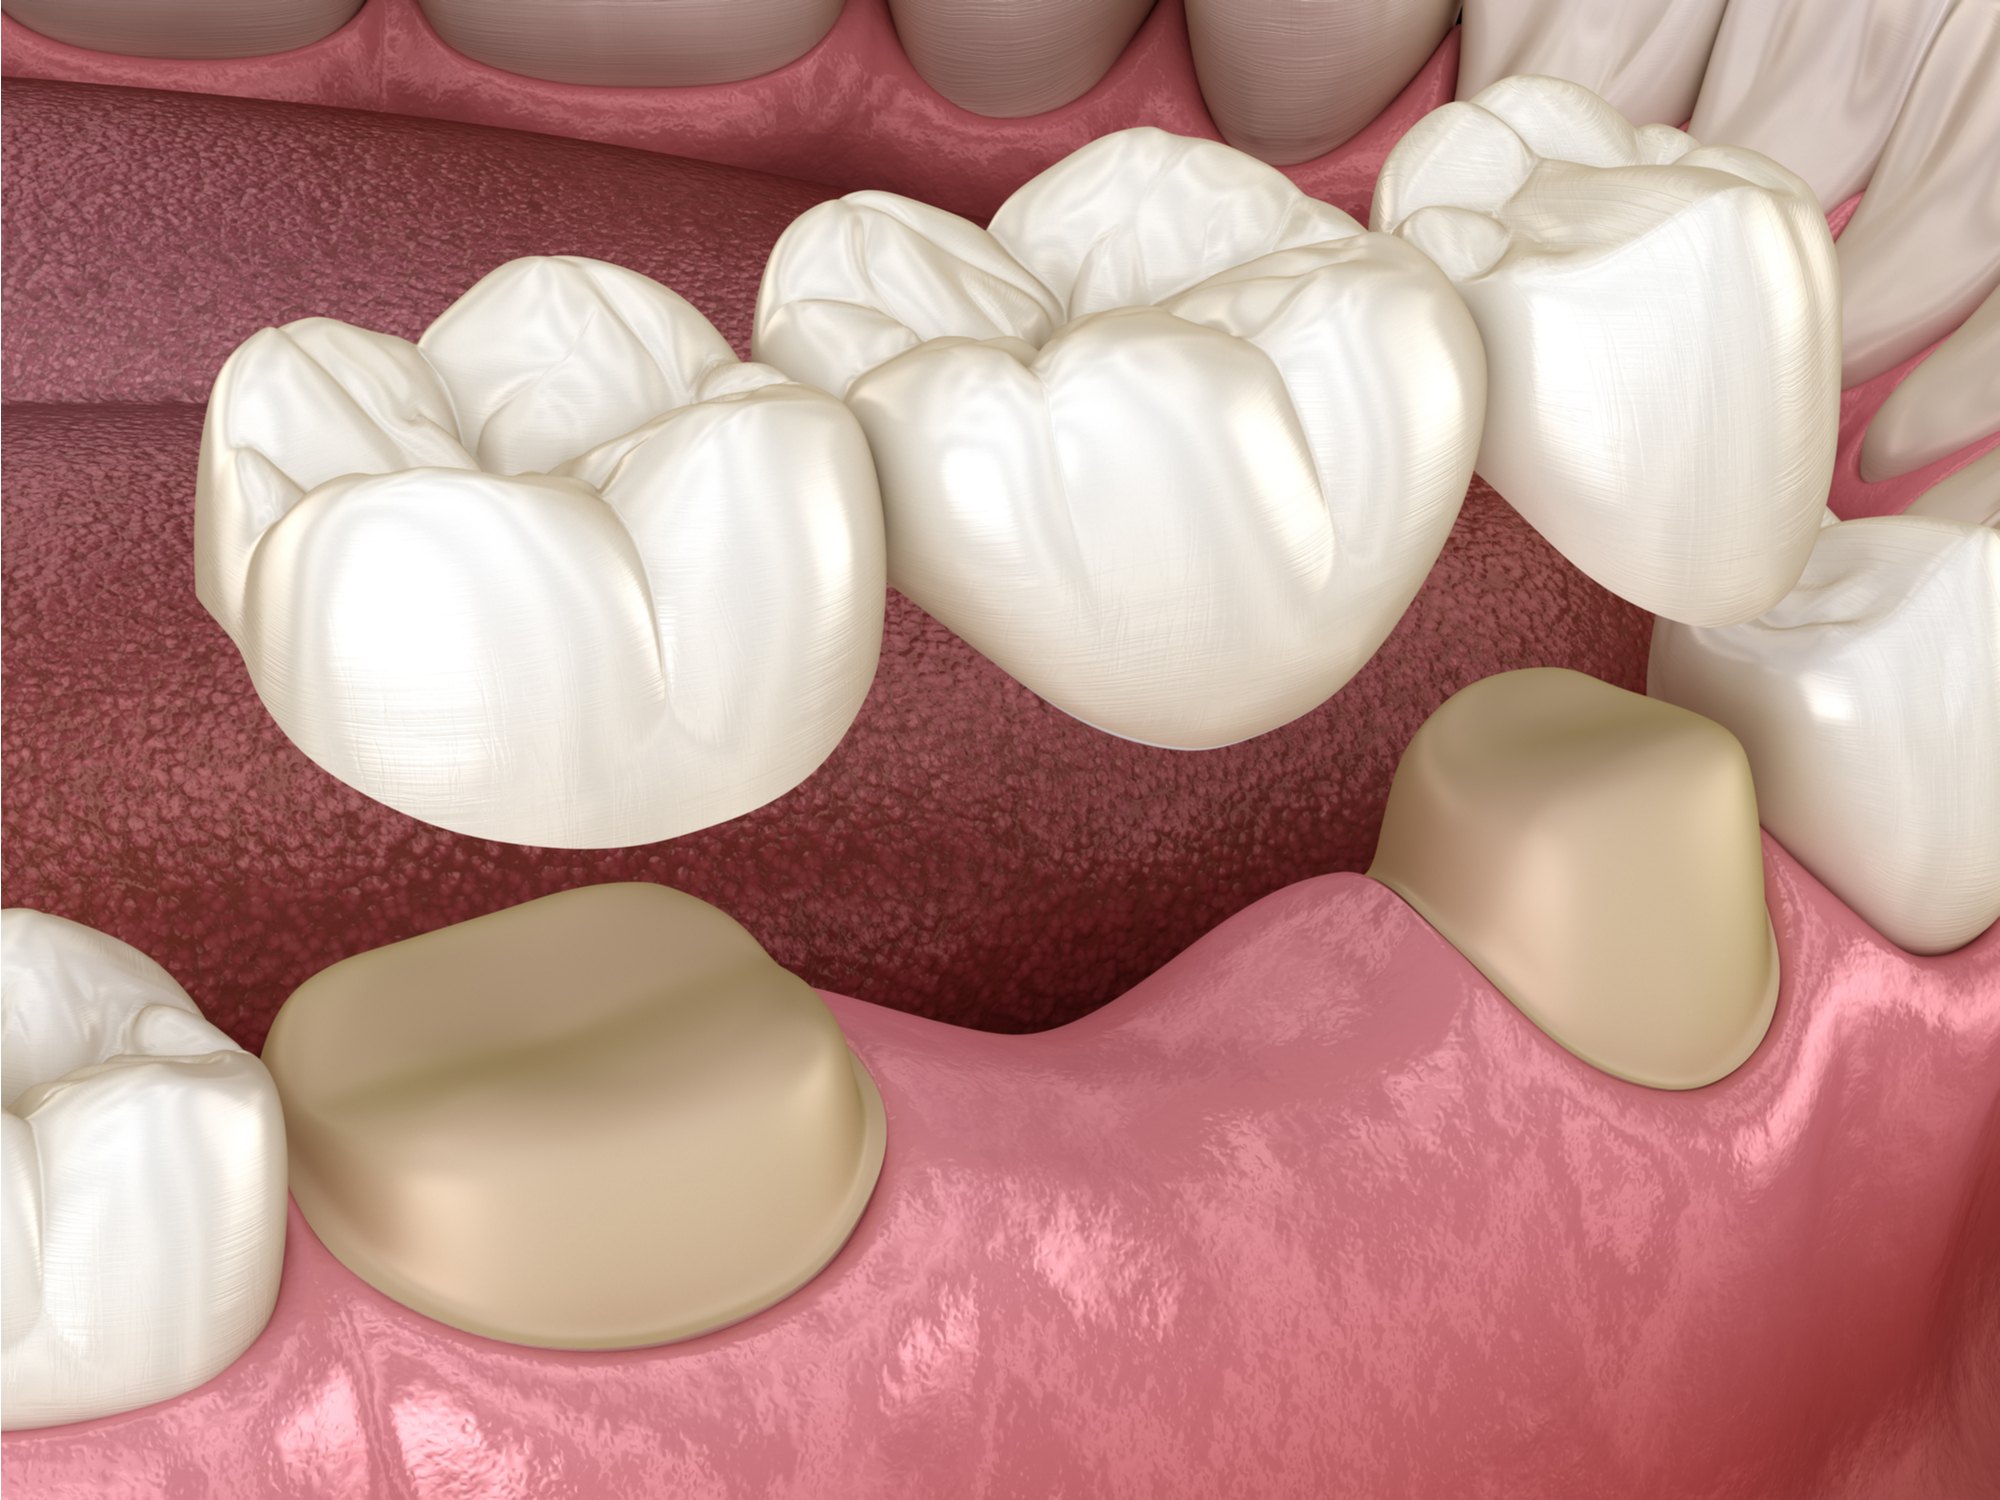 أنواع تلبيس الاسنان